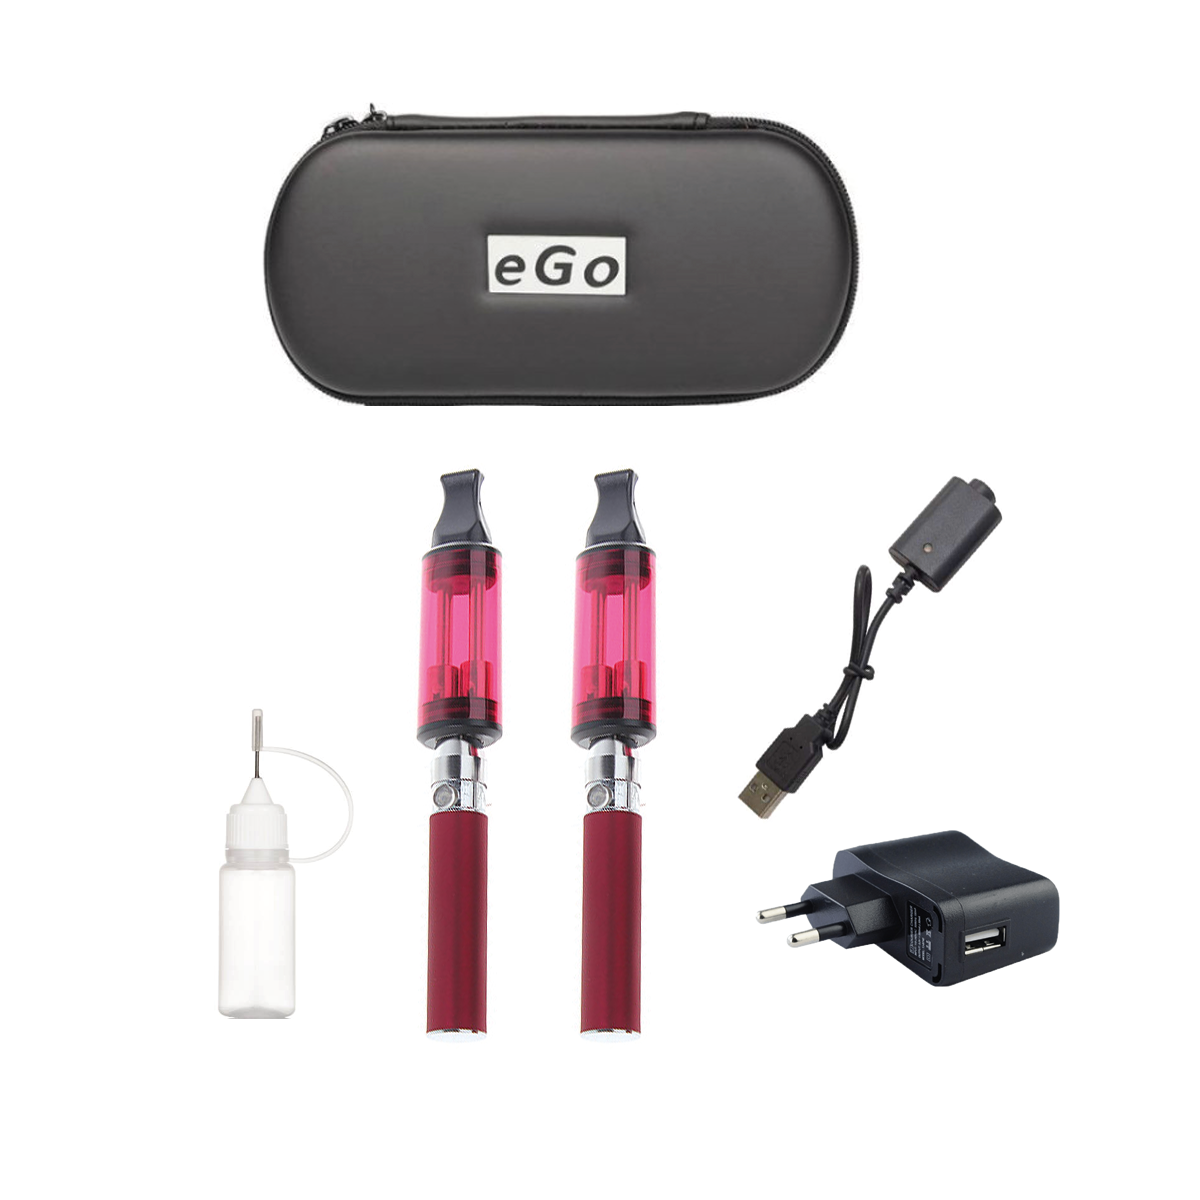 2 Cigarettes Electronique vaprizer Ego-Ce9 double stem 5ml atomiseur batterie 900 mAh Rouge + Cas + Charguer